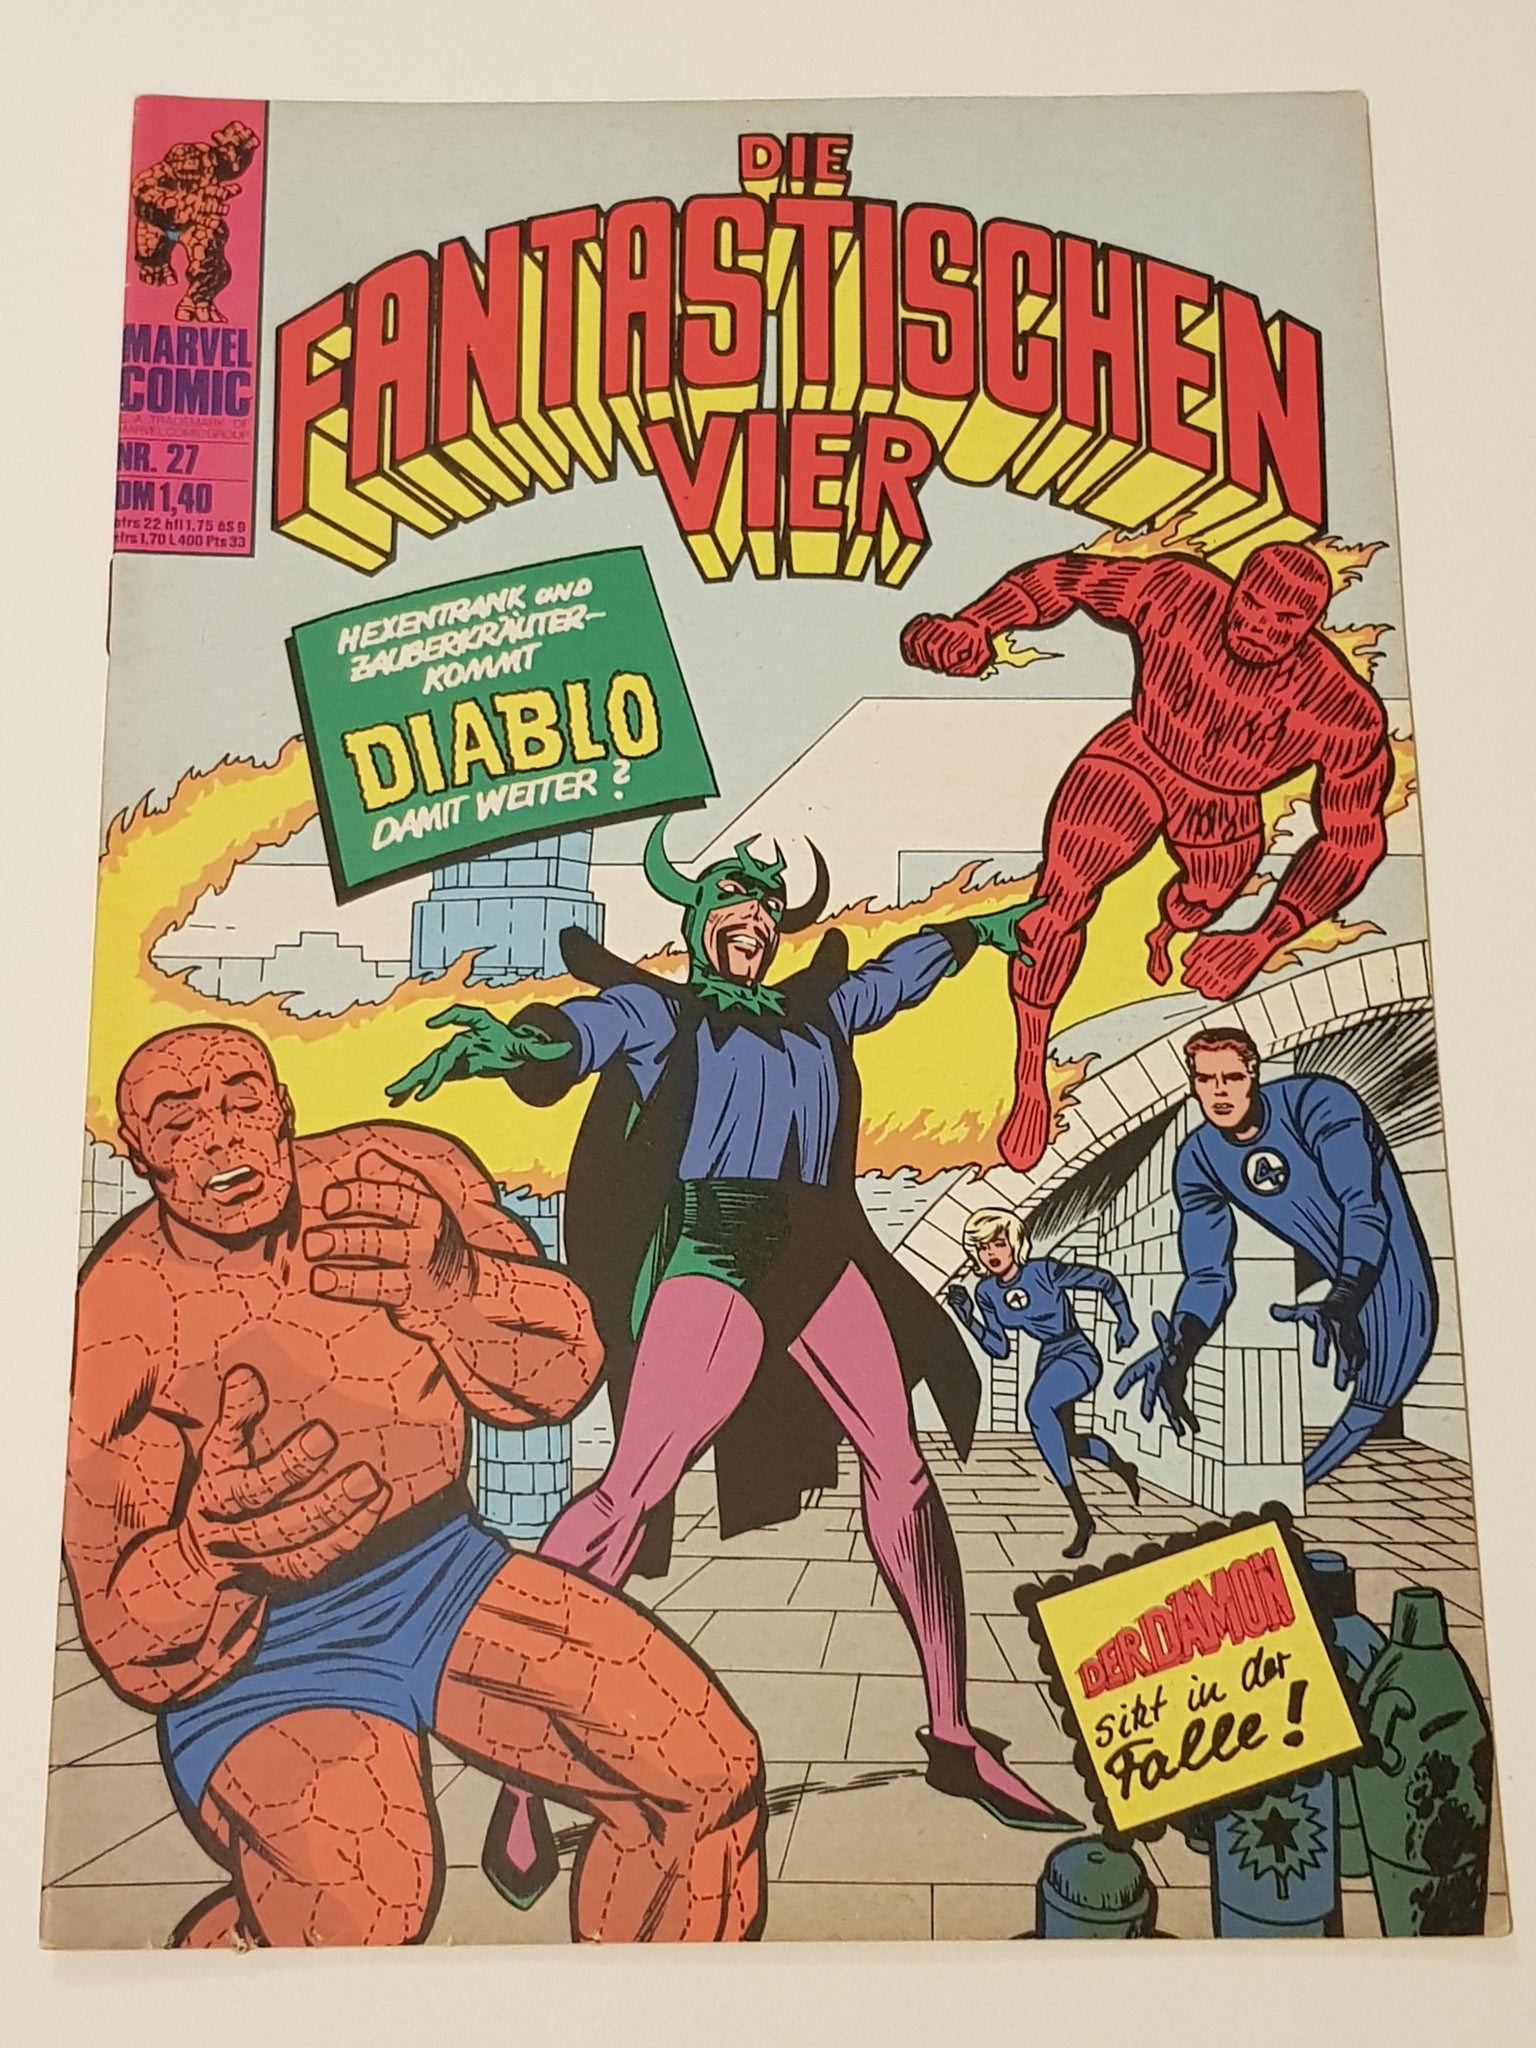 Die Fantastischen Vier #27 VF- (German Edition of Fantastic Four #30)